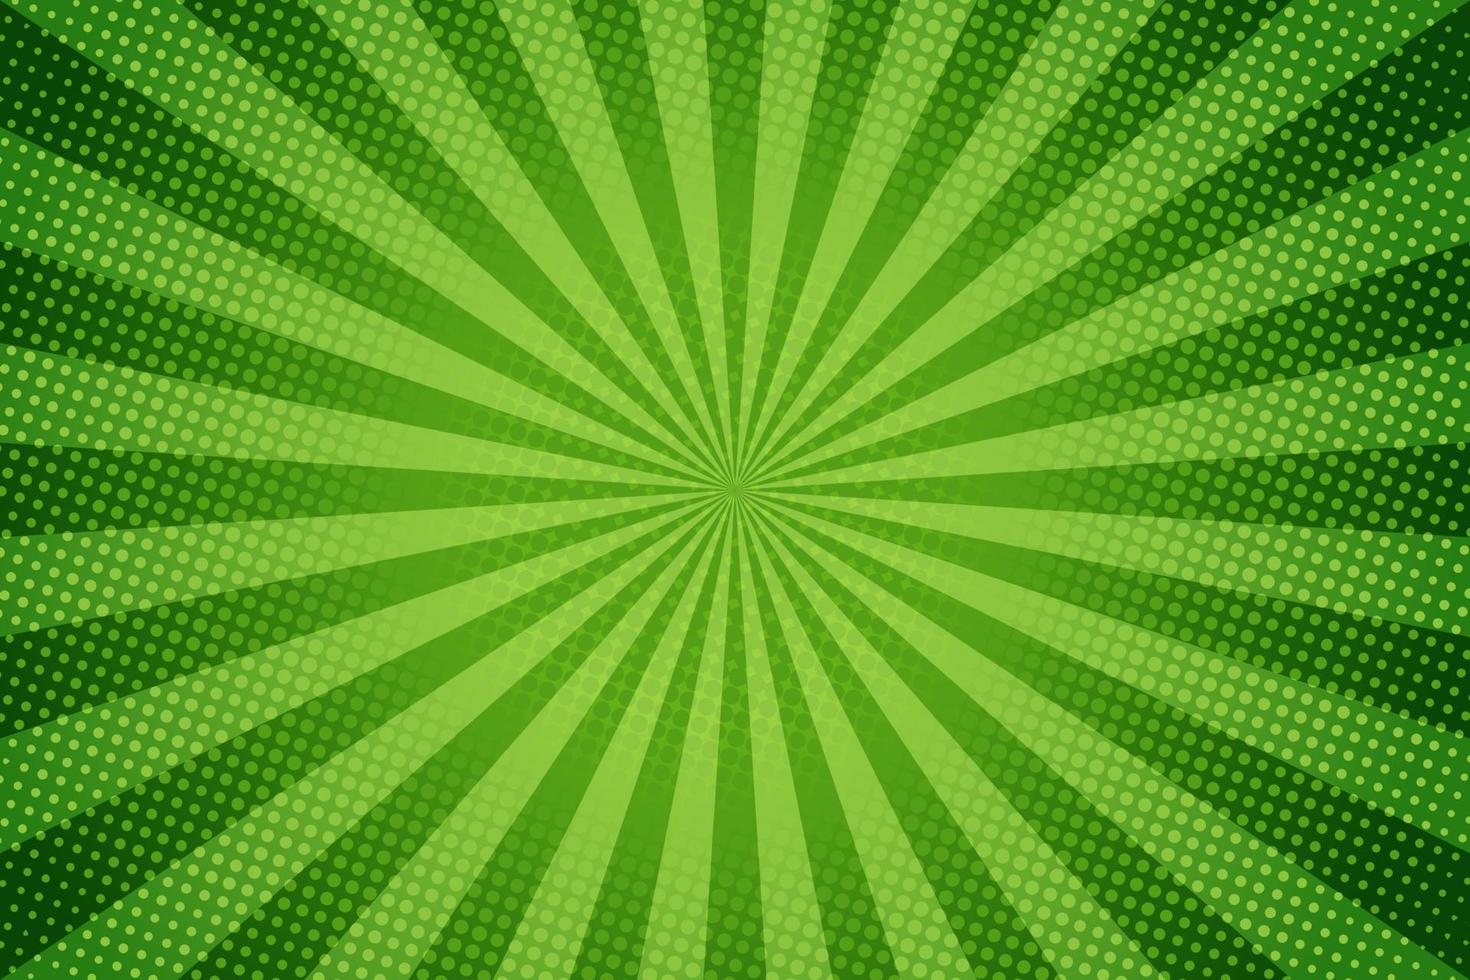 raios de sol retrô estilo vintage sobre fundo verde, padrão em quadrinhos com starburst e meio-tom. efeito de sunburst retrô dos desenhos animados com pontos. raios. ilustração vetorial de bandeira de verão. vetor